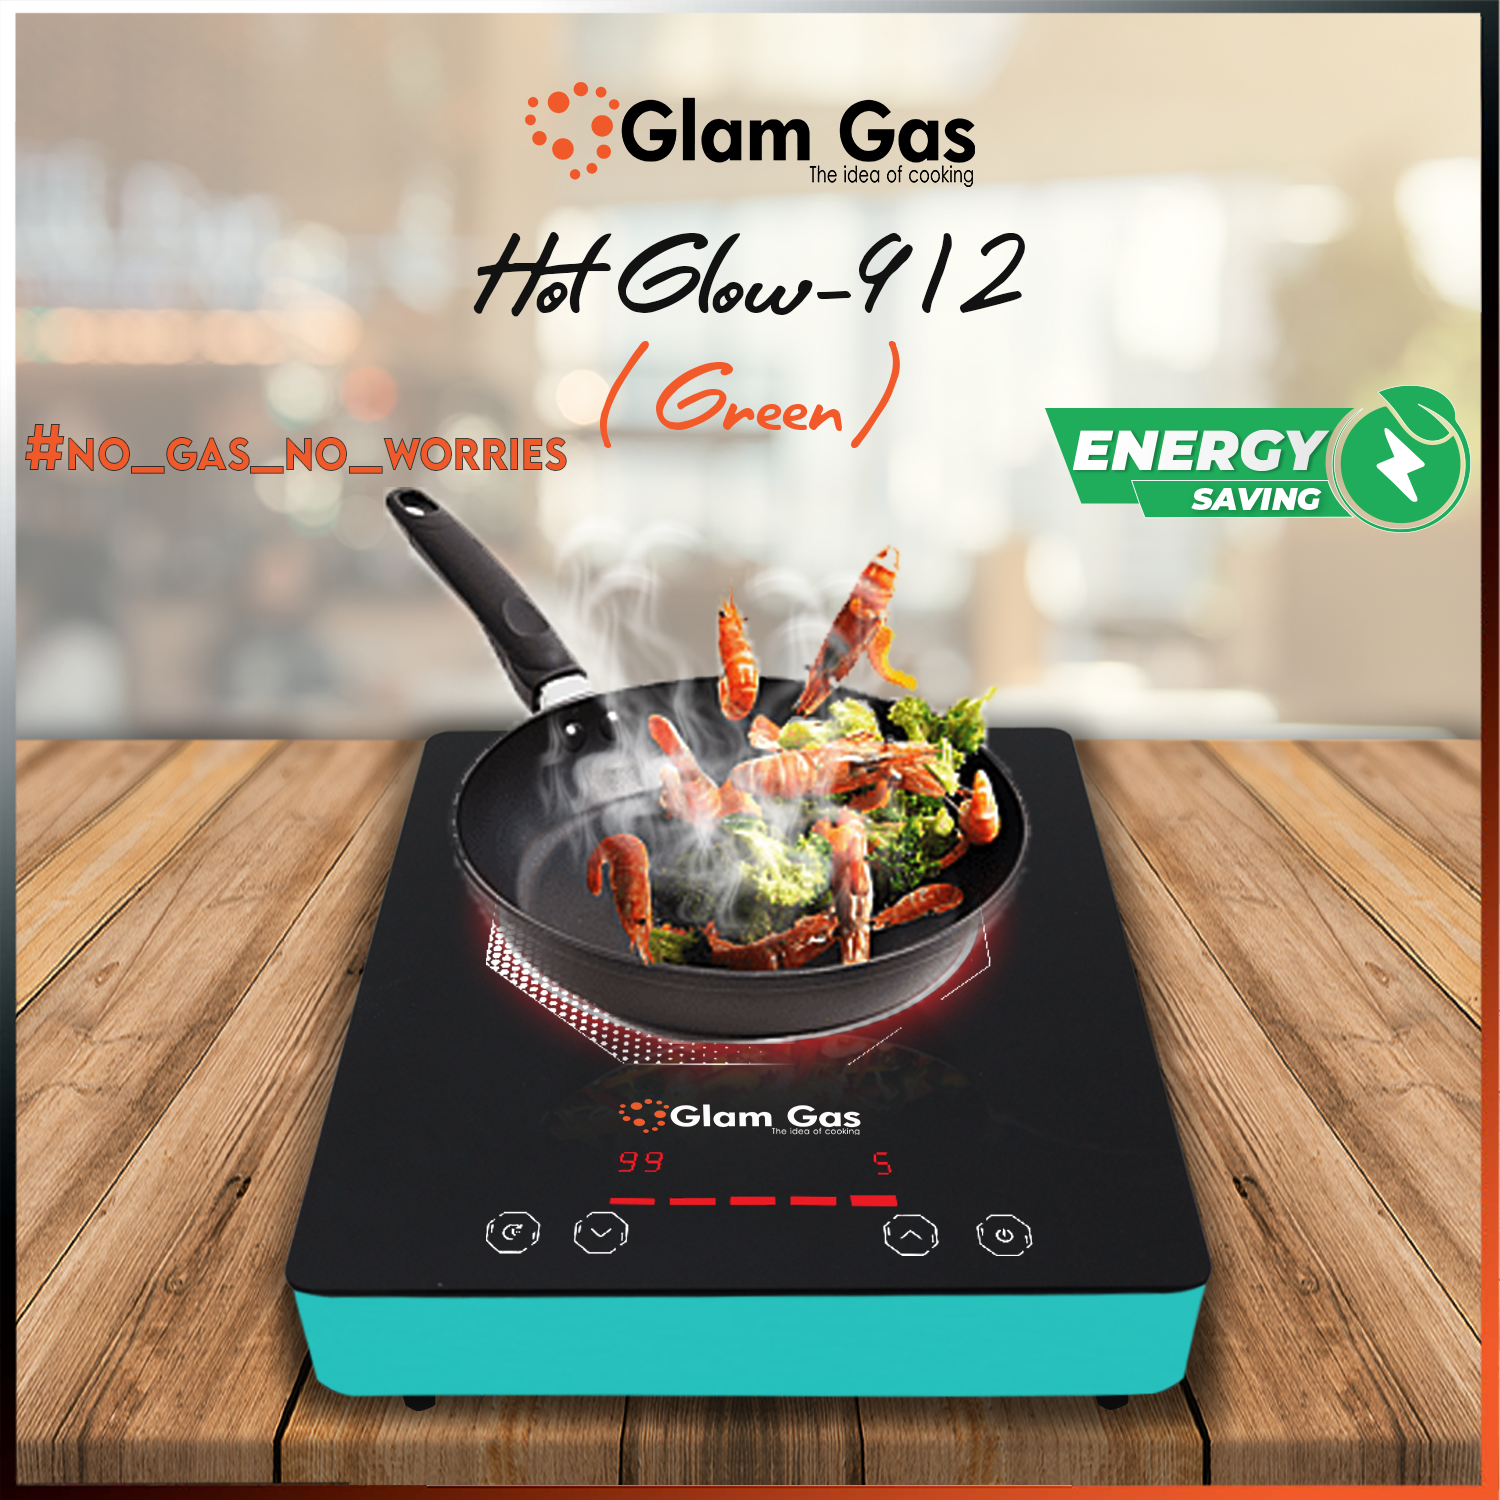 Hot Glow 912 (Green)